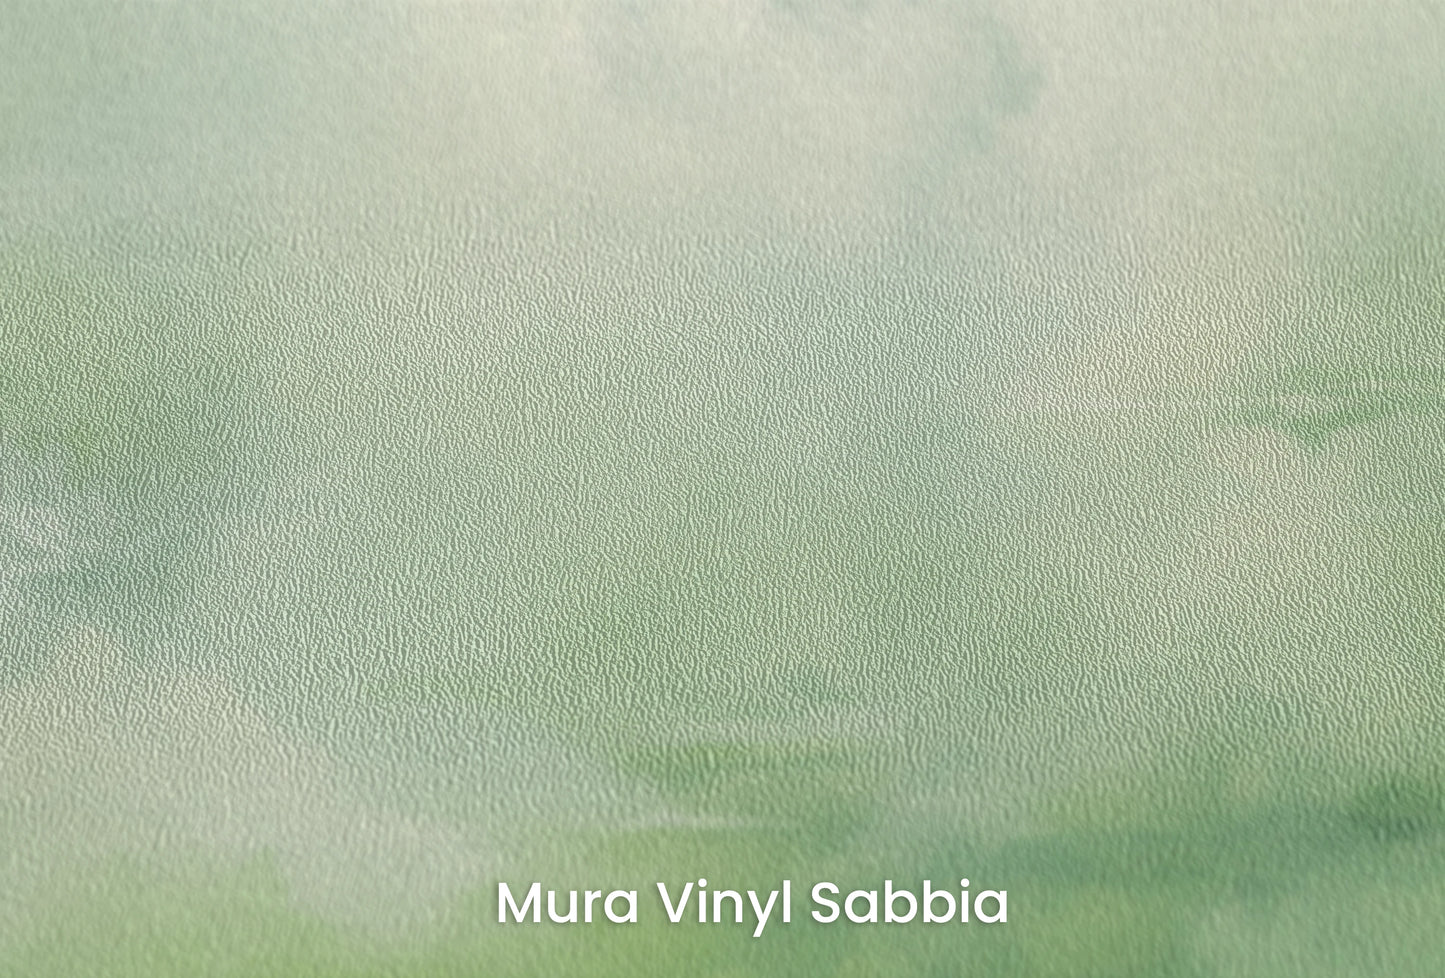 Zbliżenie na artystyczną fototapetę o nazwie Storm Herald na podłożu Mura Vinyl Sabbia struktura grubego ziarna piasku.